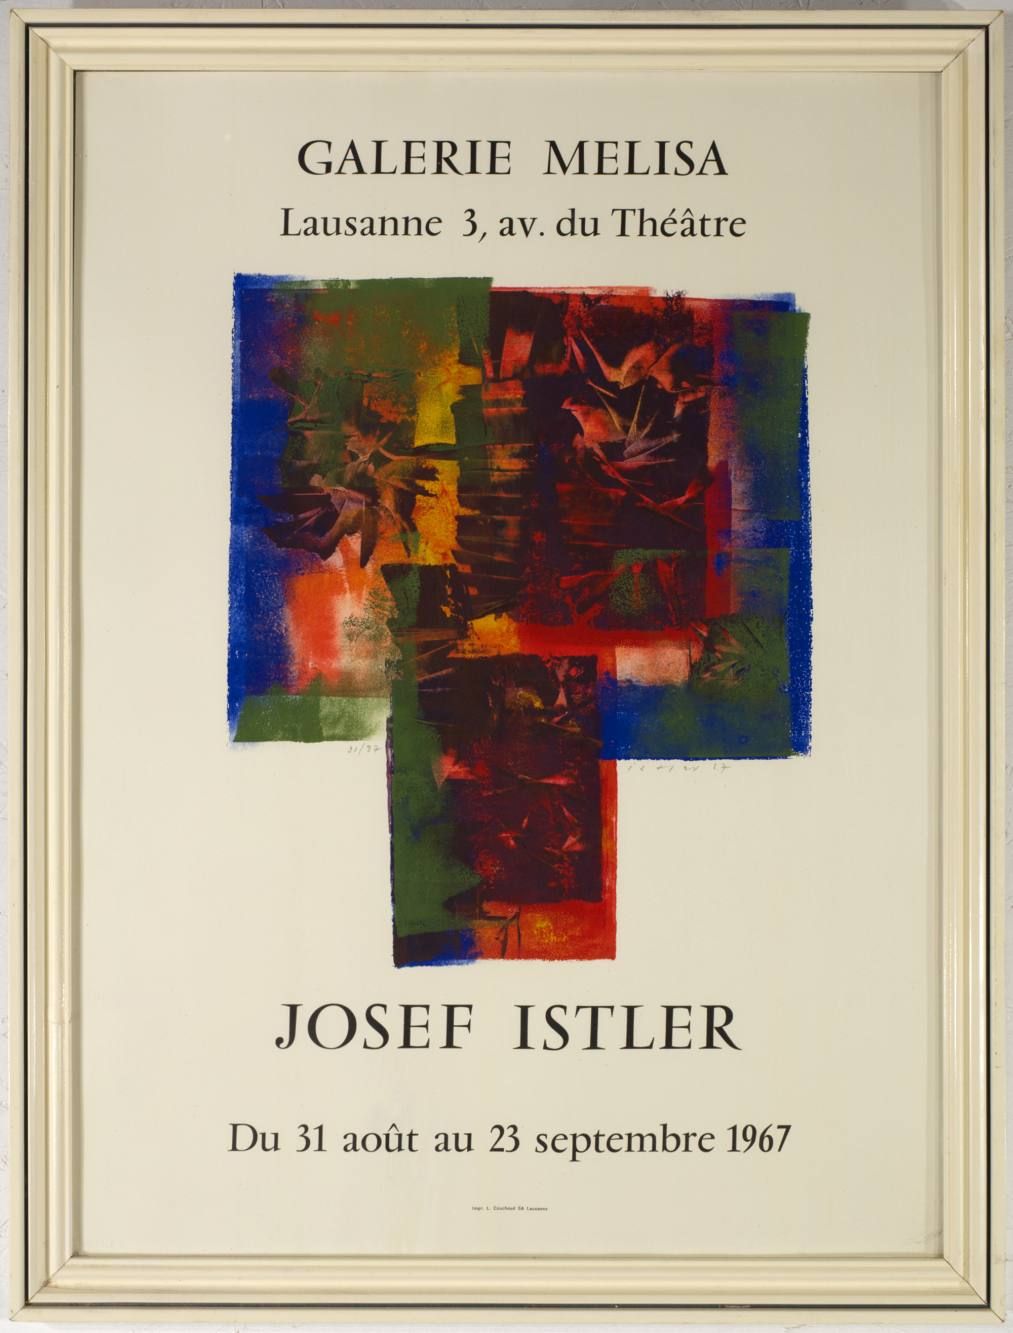 Josef Istler (1919-2000) EXHIBITION POSTER - JOSEF ISTLER IN GALLERY MELISA

196&hellip;